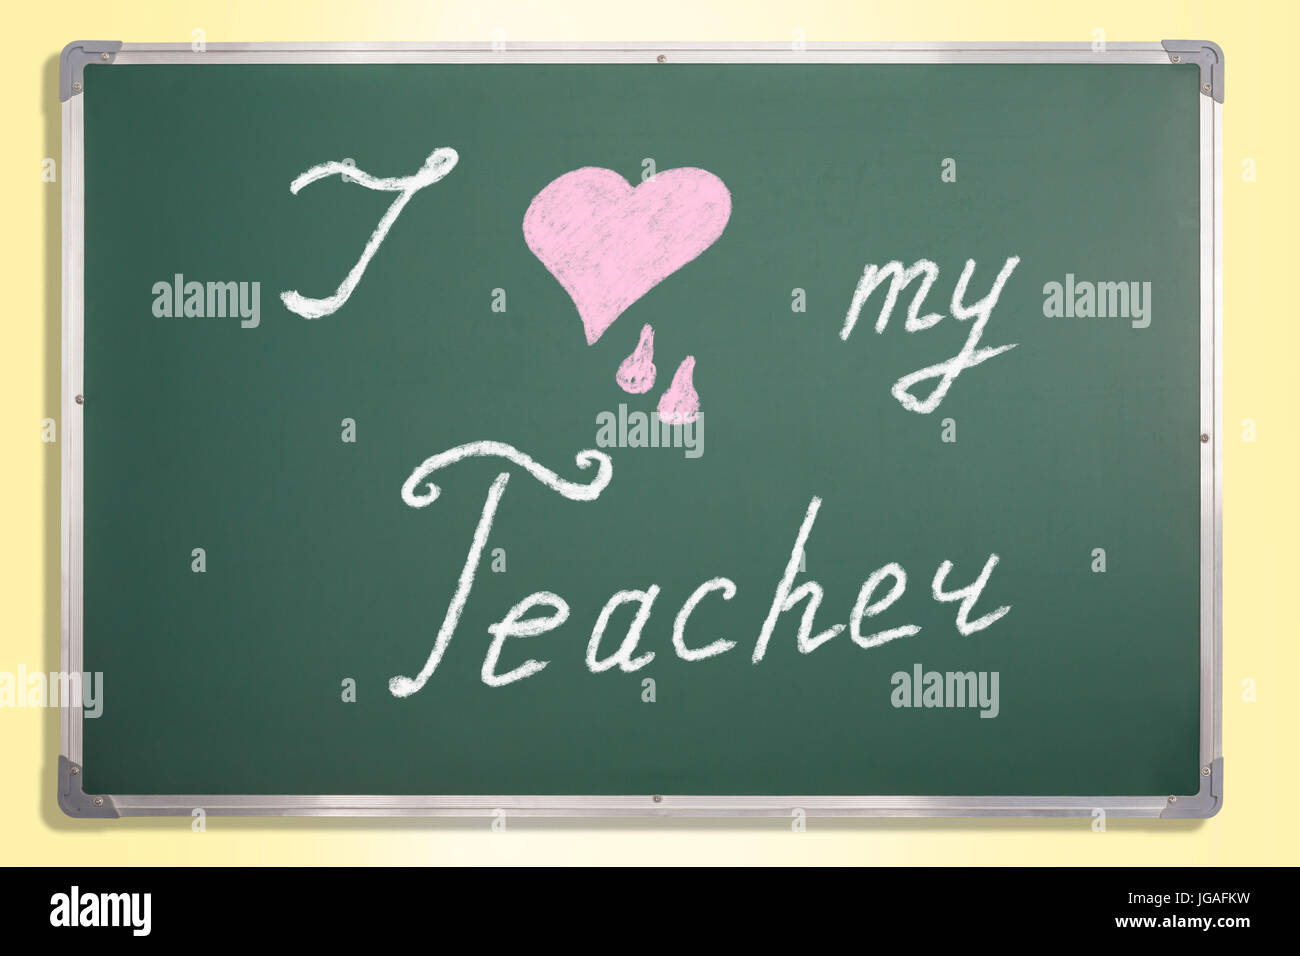 Teacher Wallpaper  NawPic